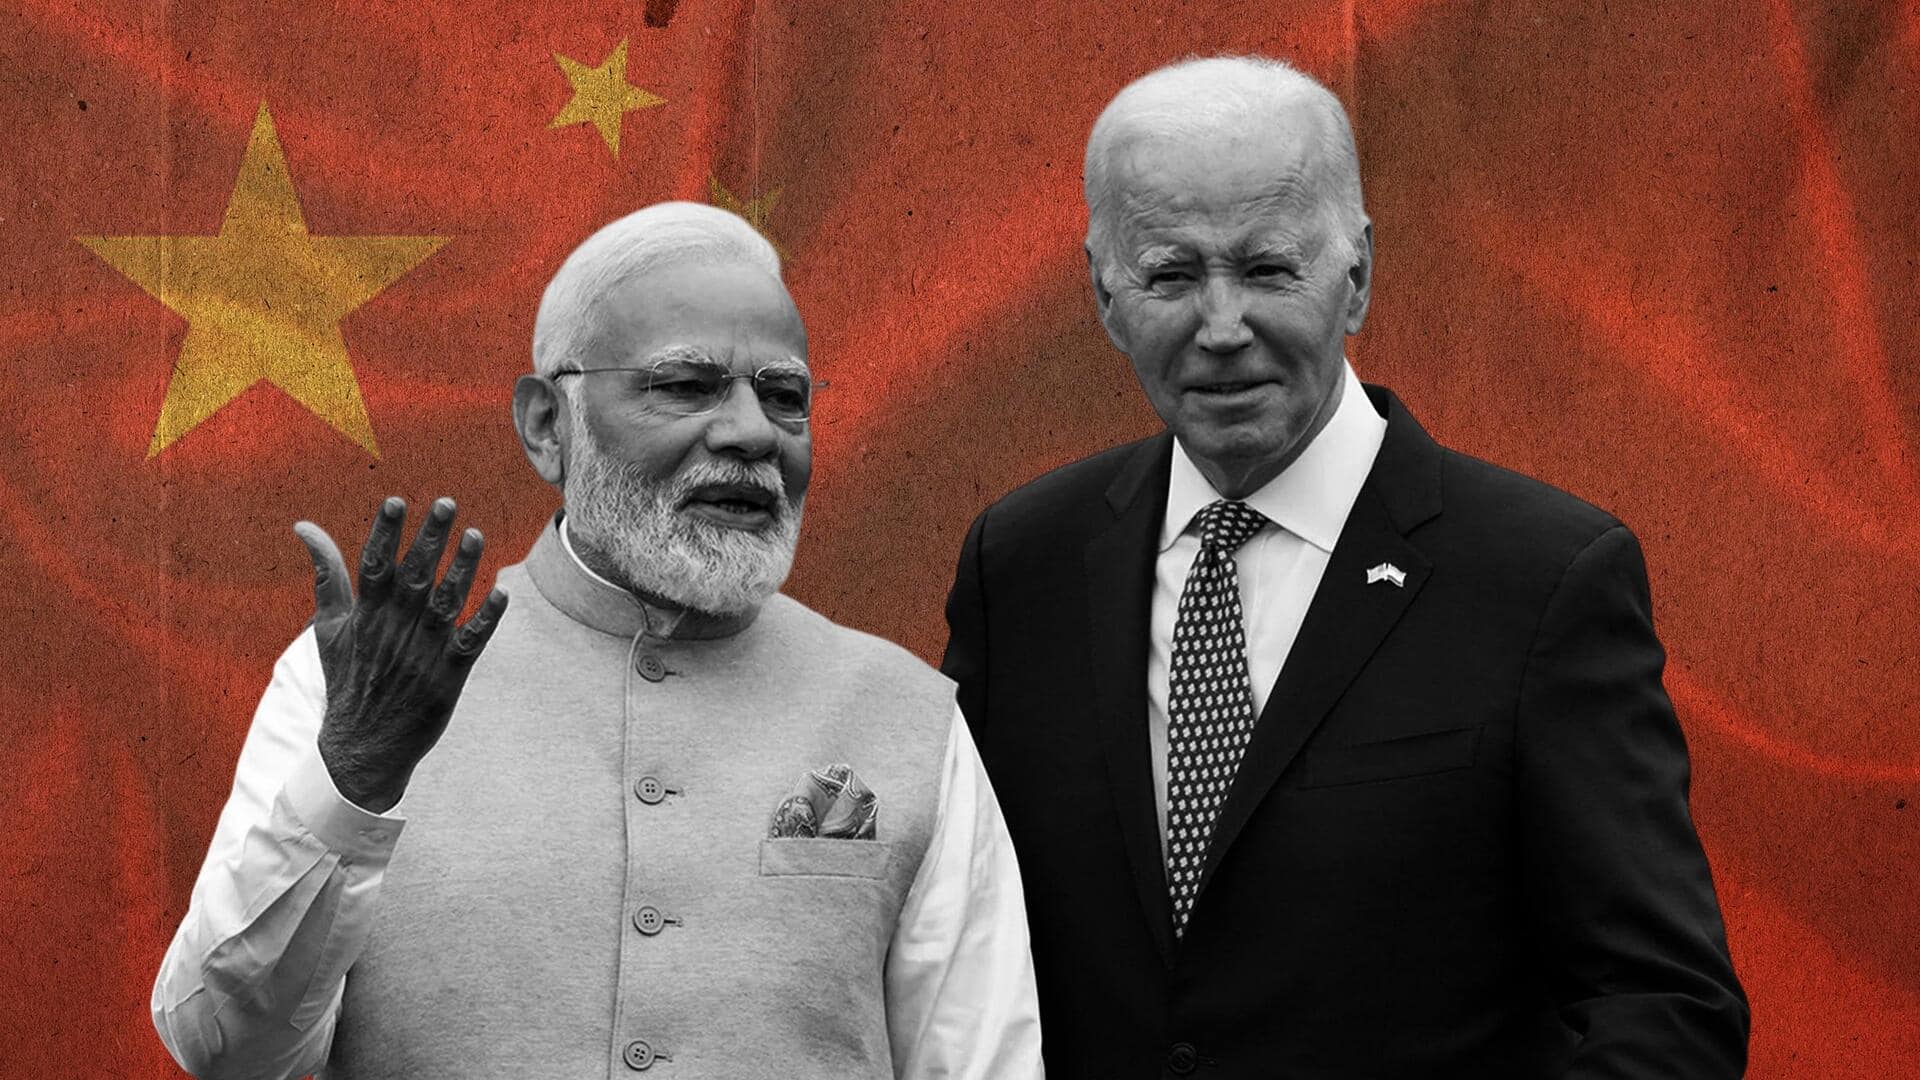 प्रधानमंत्री मोदी और अमेरिकी राष्ट्रपति बाइडन ने अधिकांश समय चीन पर की थी चर्चा- अधिकारी